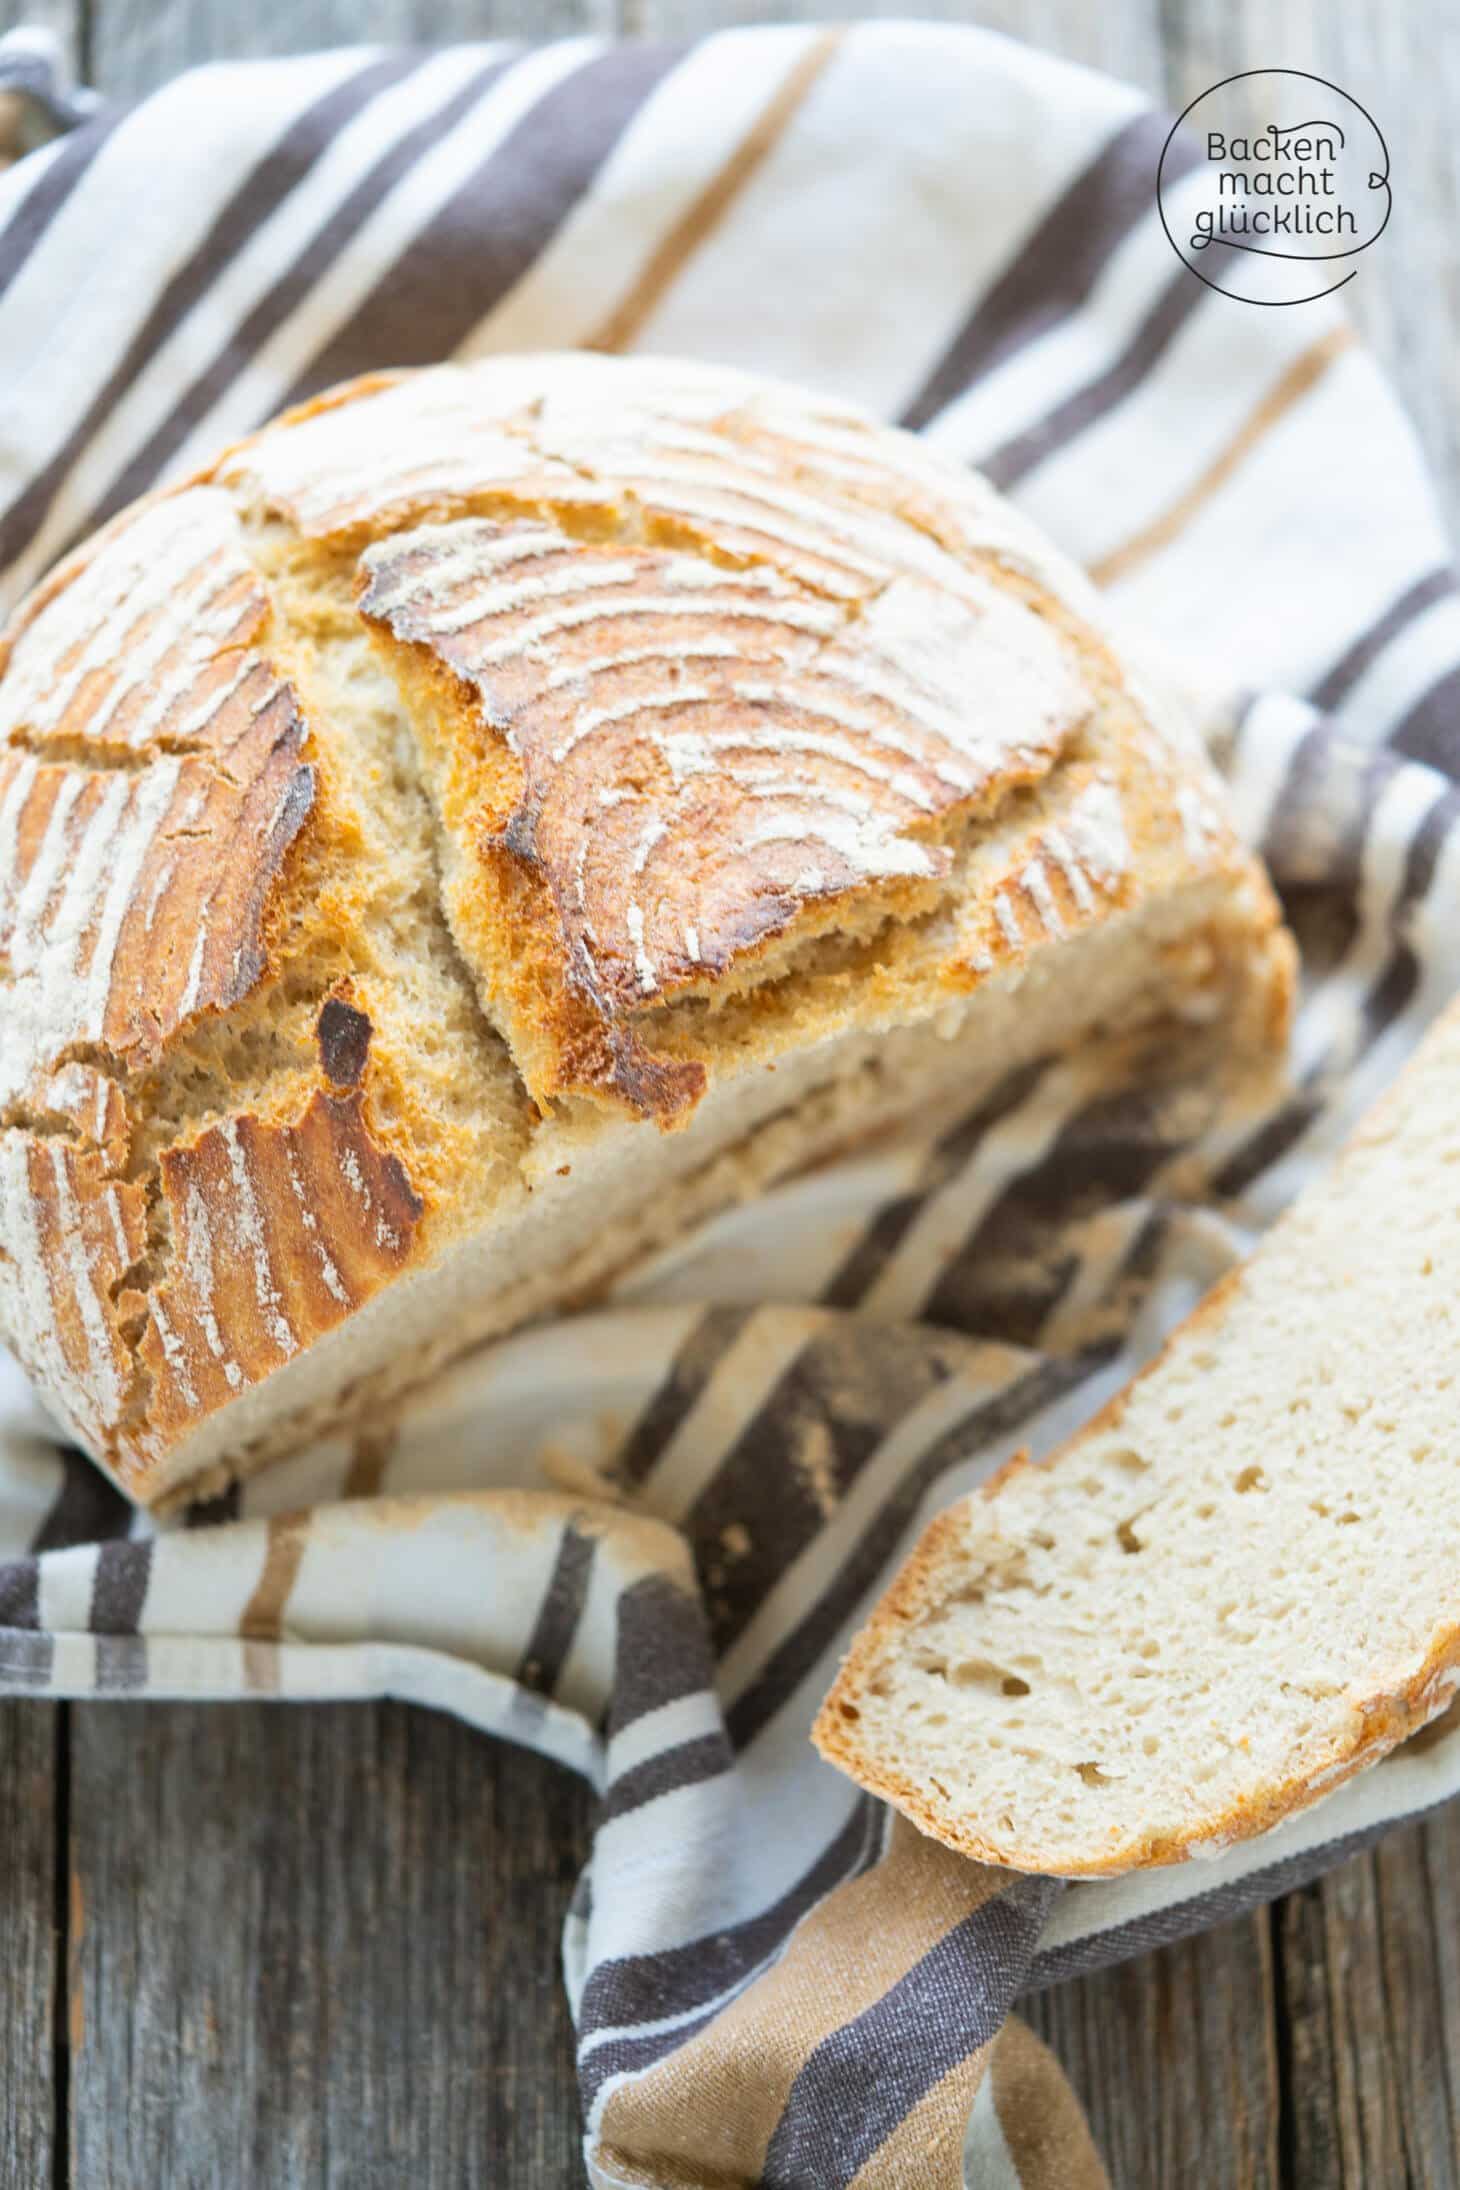 Weizen-Sauerteig-Brot | Backen macht glücklich